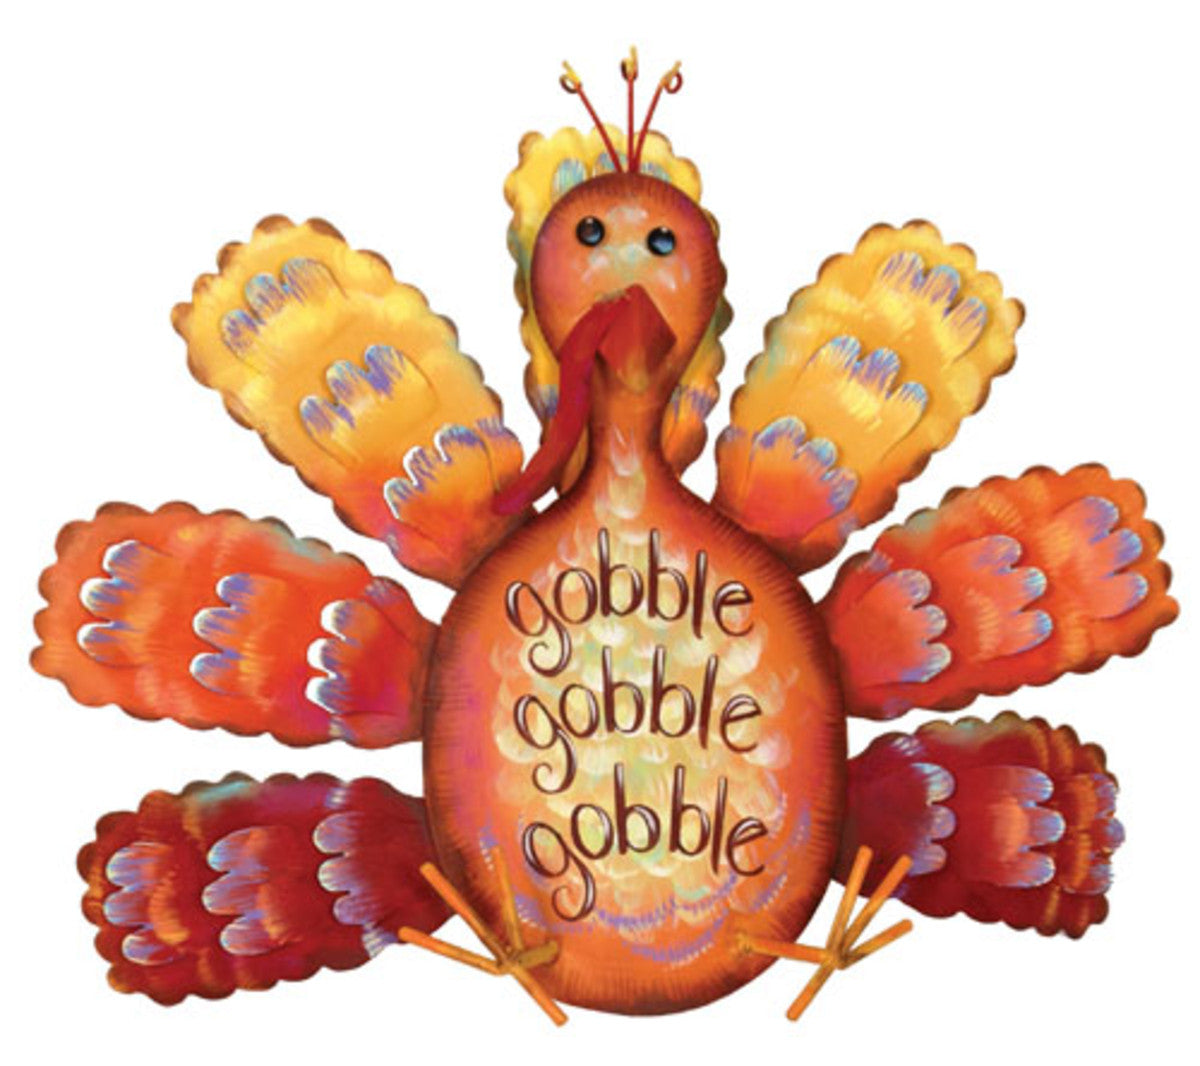 "Gobble Gobble" Turkey